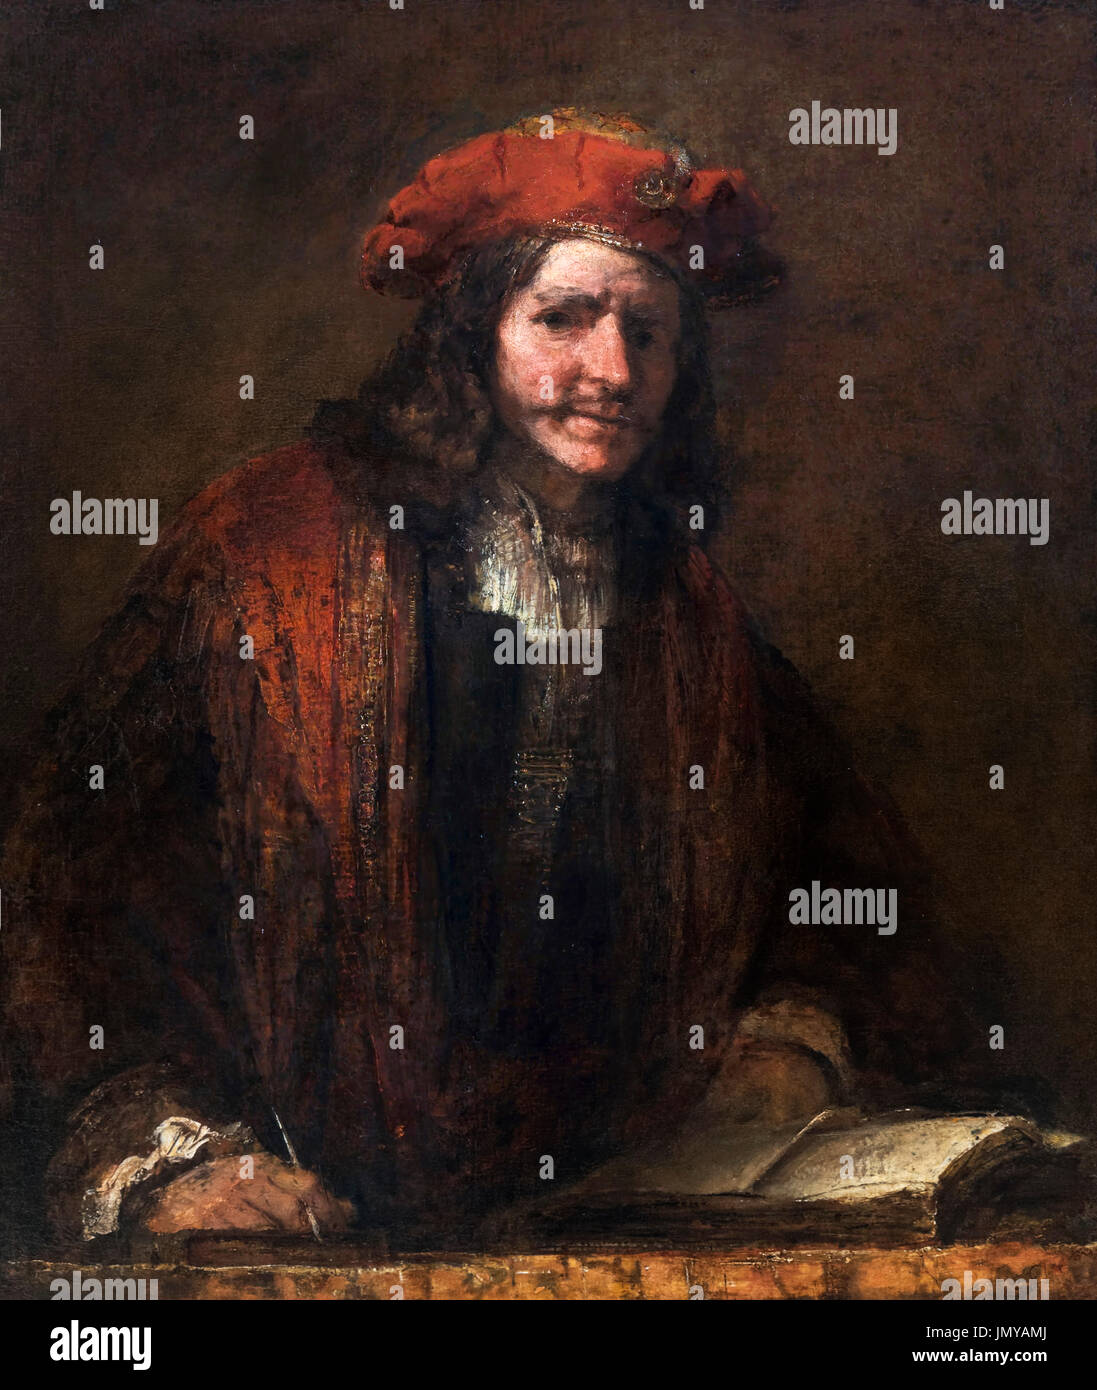 L'homme à la casquette rouge (de Man met de Rode Muts), attribuée à Rembrandt van Rijn, huile sur toile, c.1660. Banque D'Images